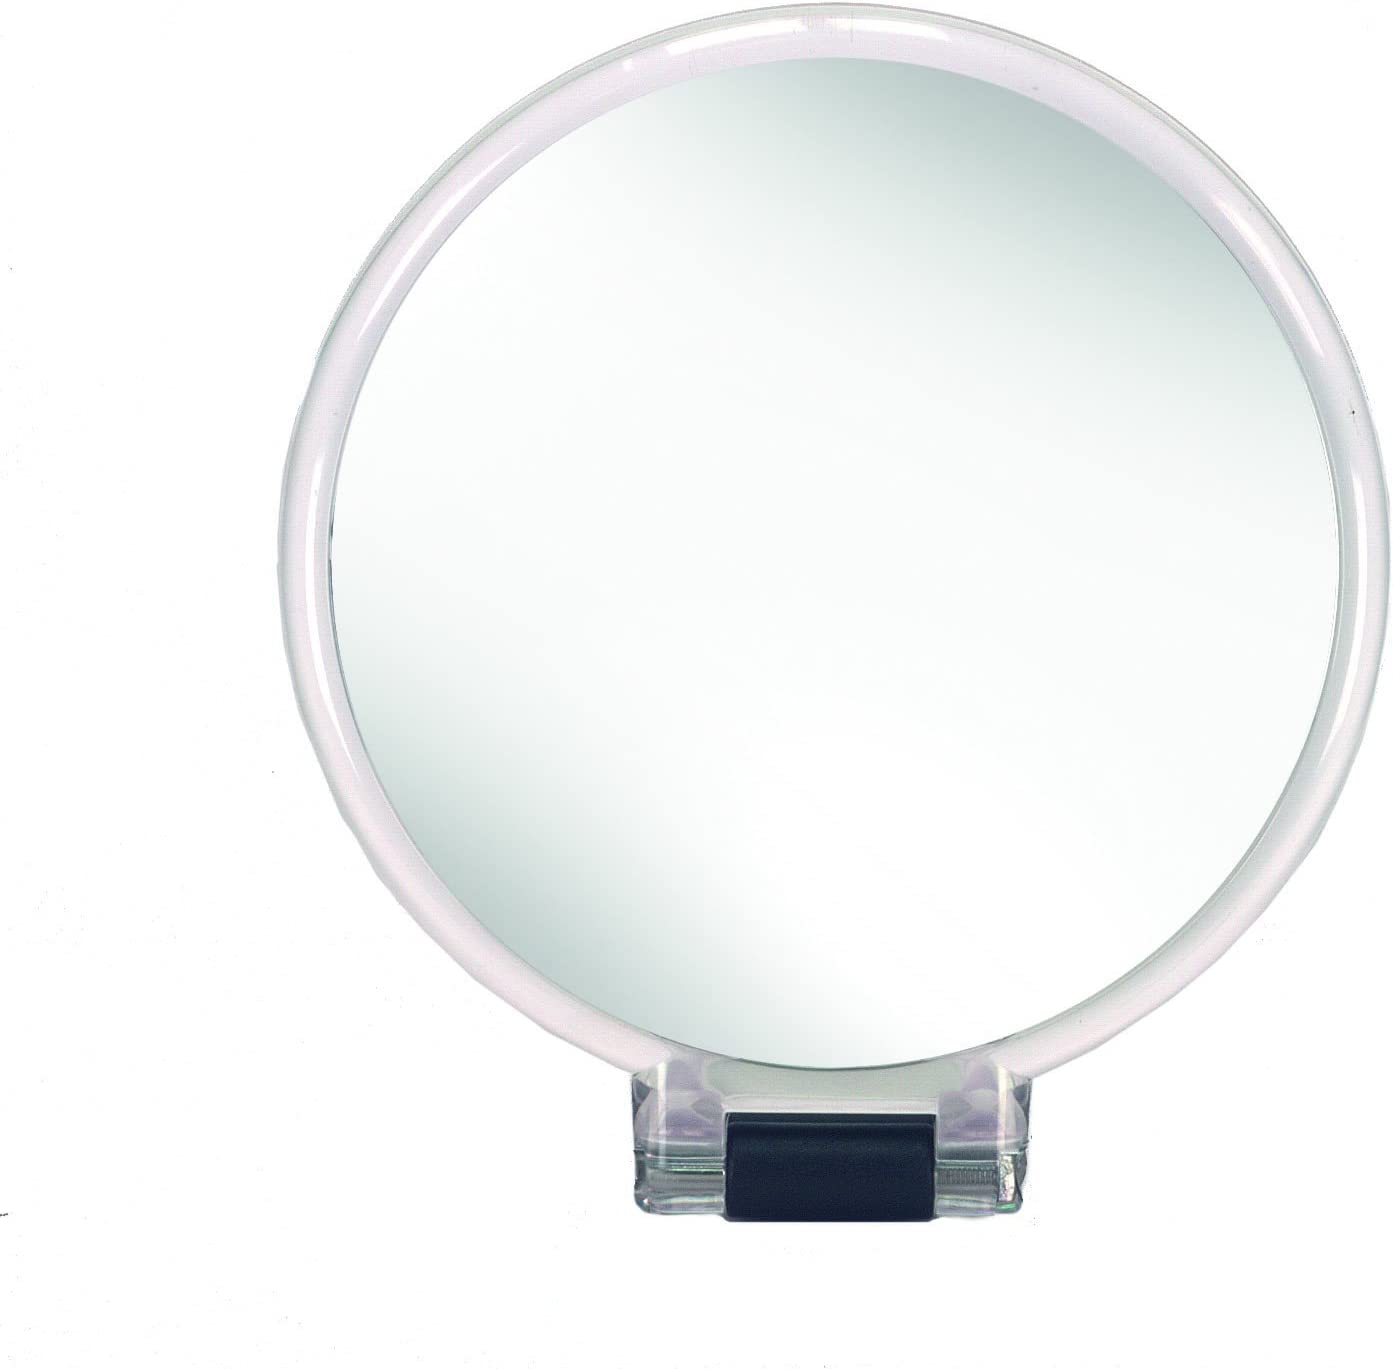 Kosmetikspiegel Multi Mirror, mit 5-facher Vergrößerung, Größe: 14 x 24,5 x 1,2 cm, Material: Polystyrol/Glas